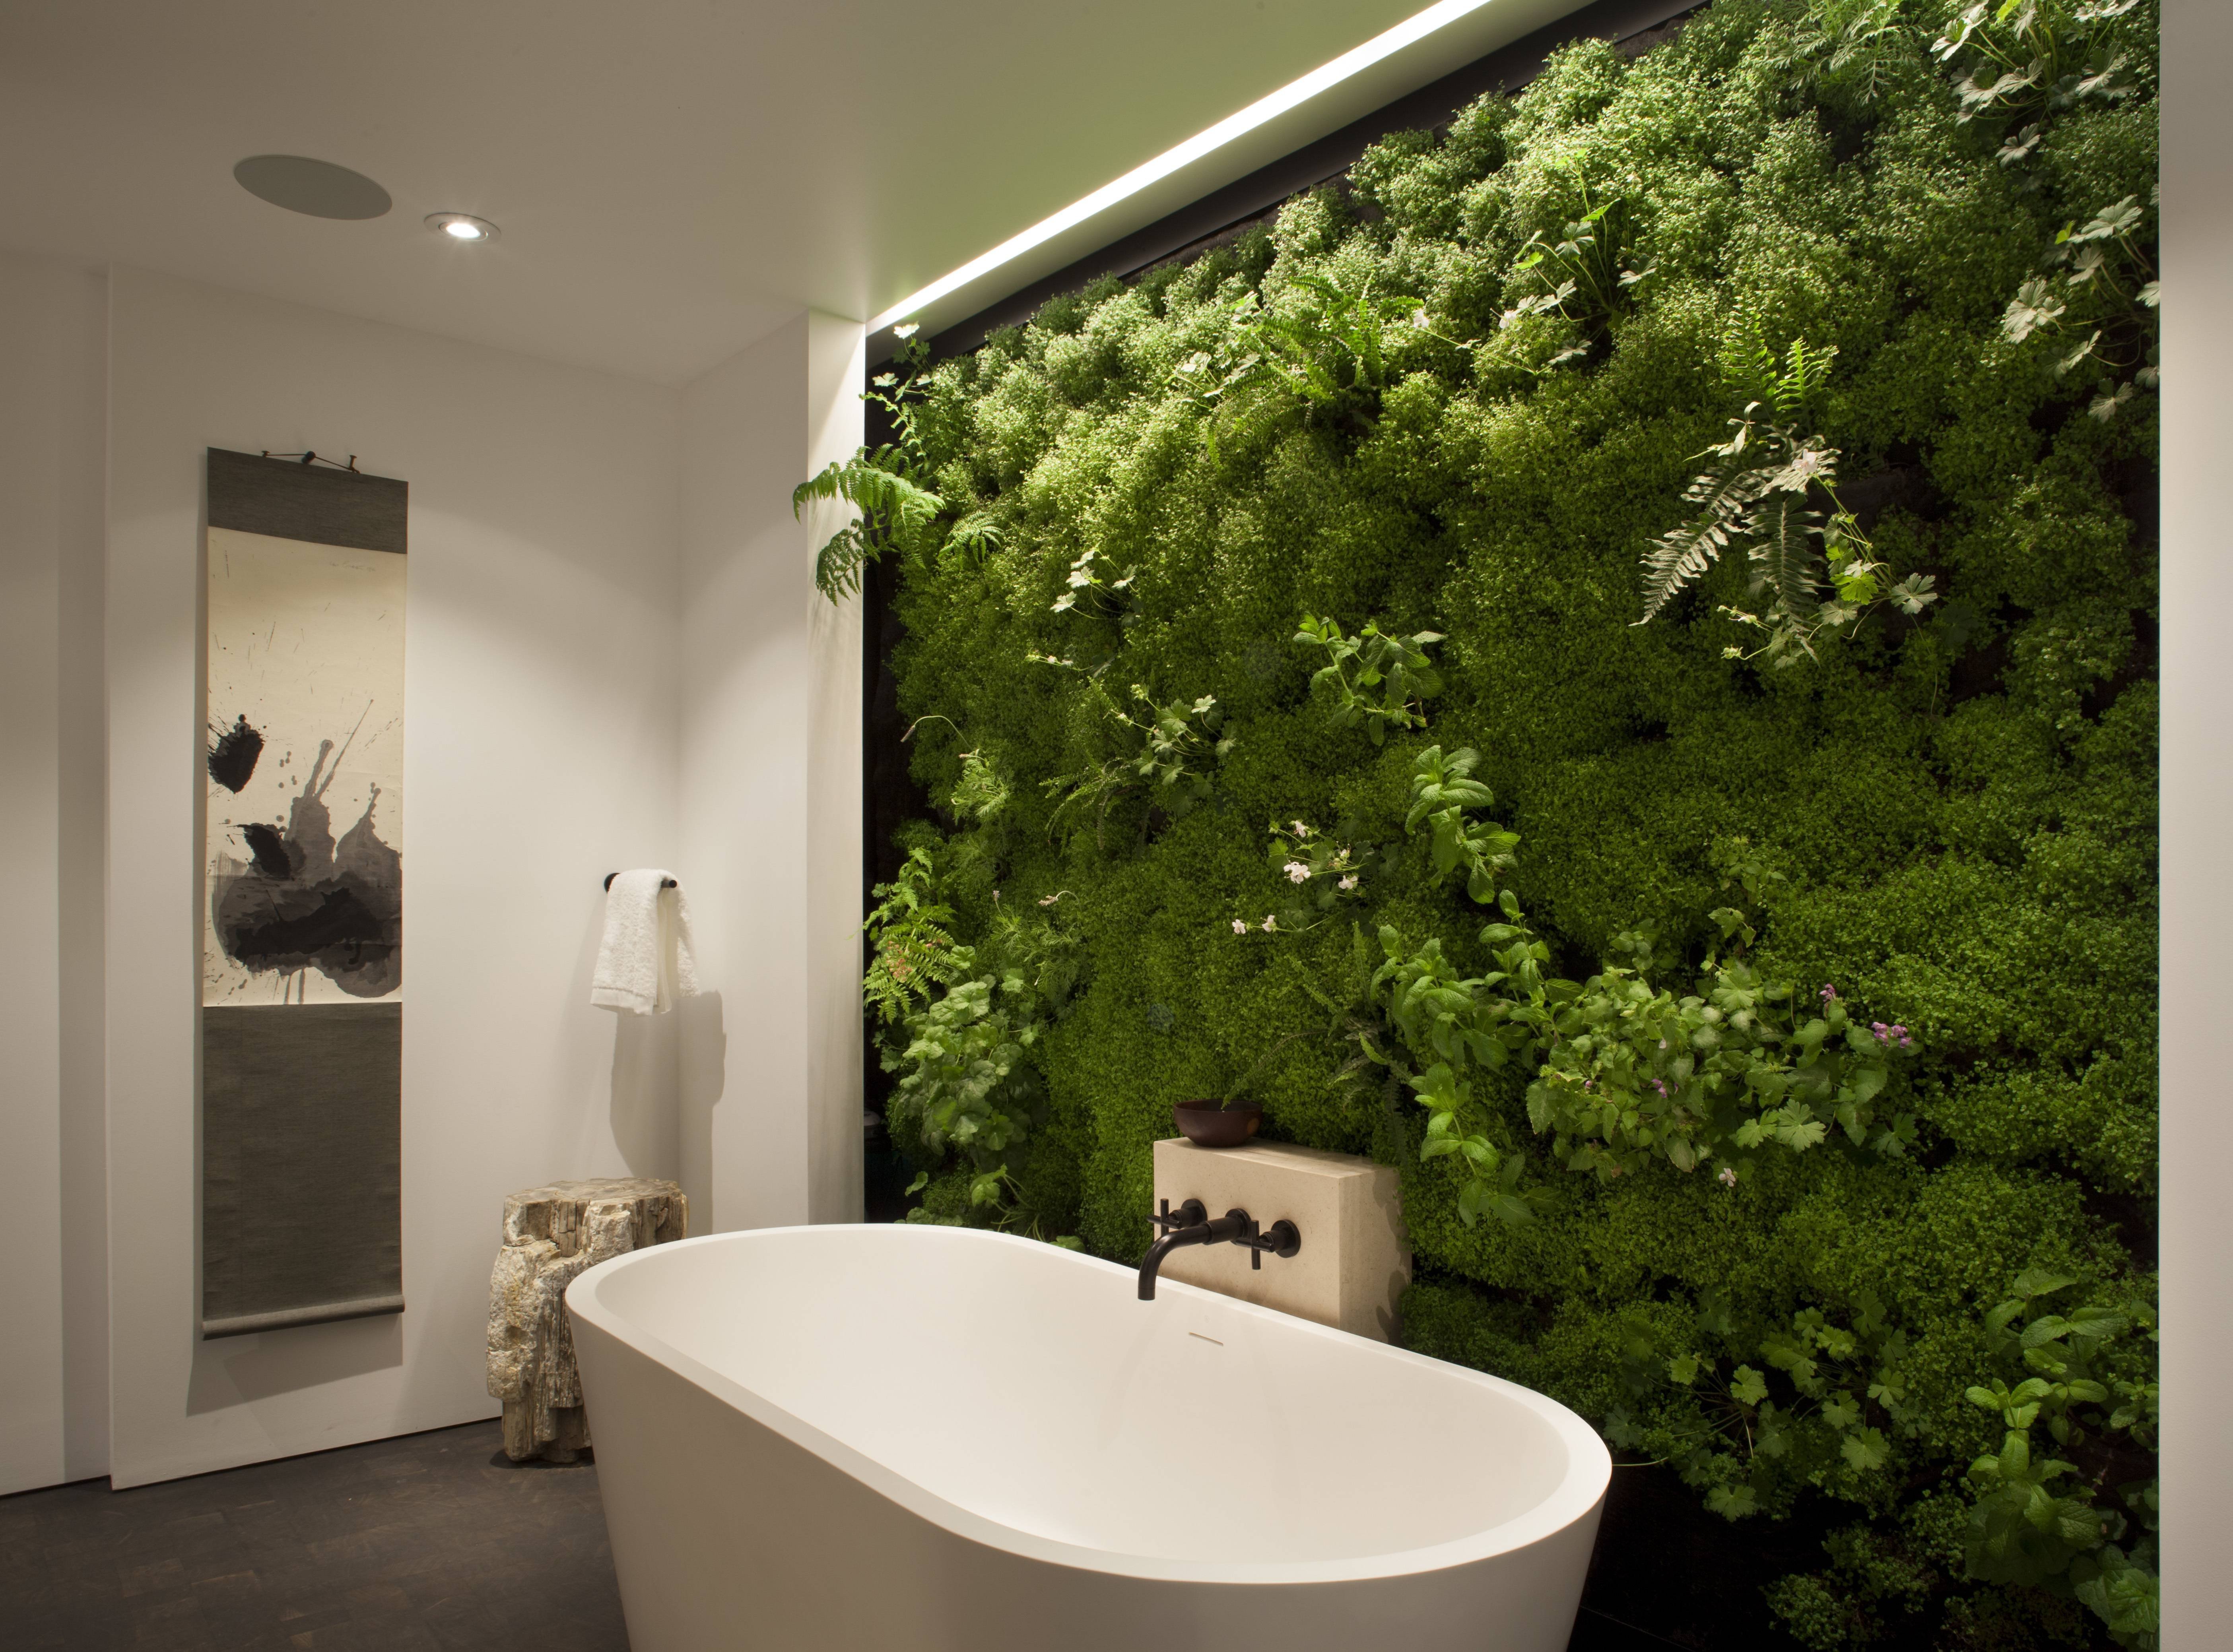 Ванные комнаты в зеленых цветах: 38 фото в разных стилях